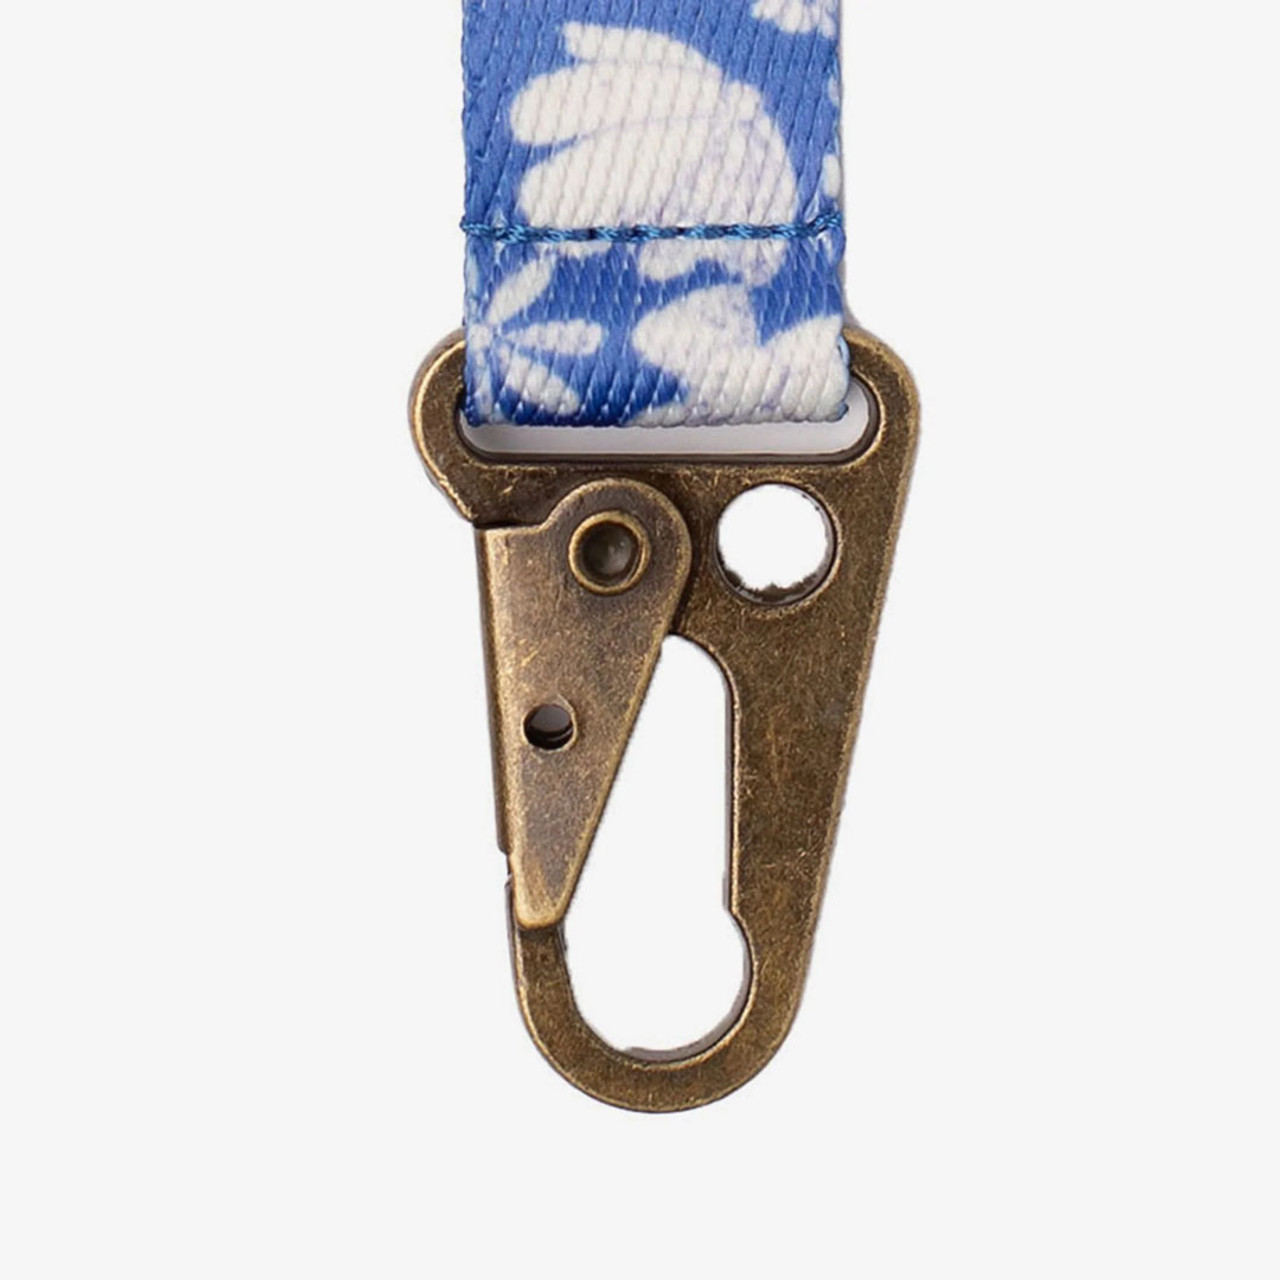 Thread Keychain Clip - Dusty Blue